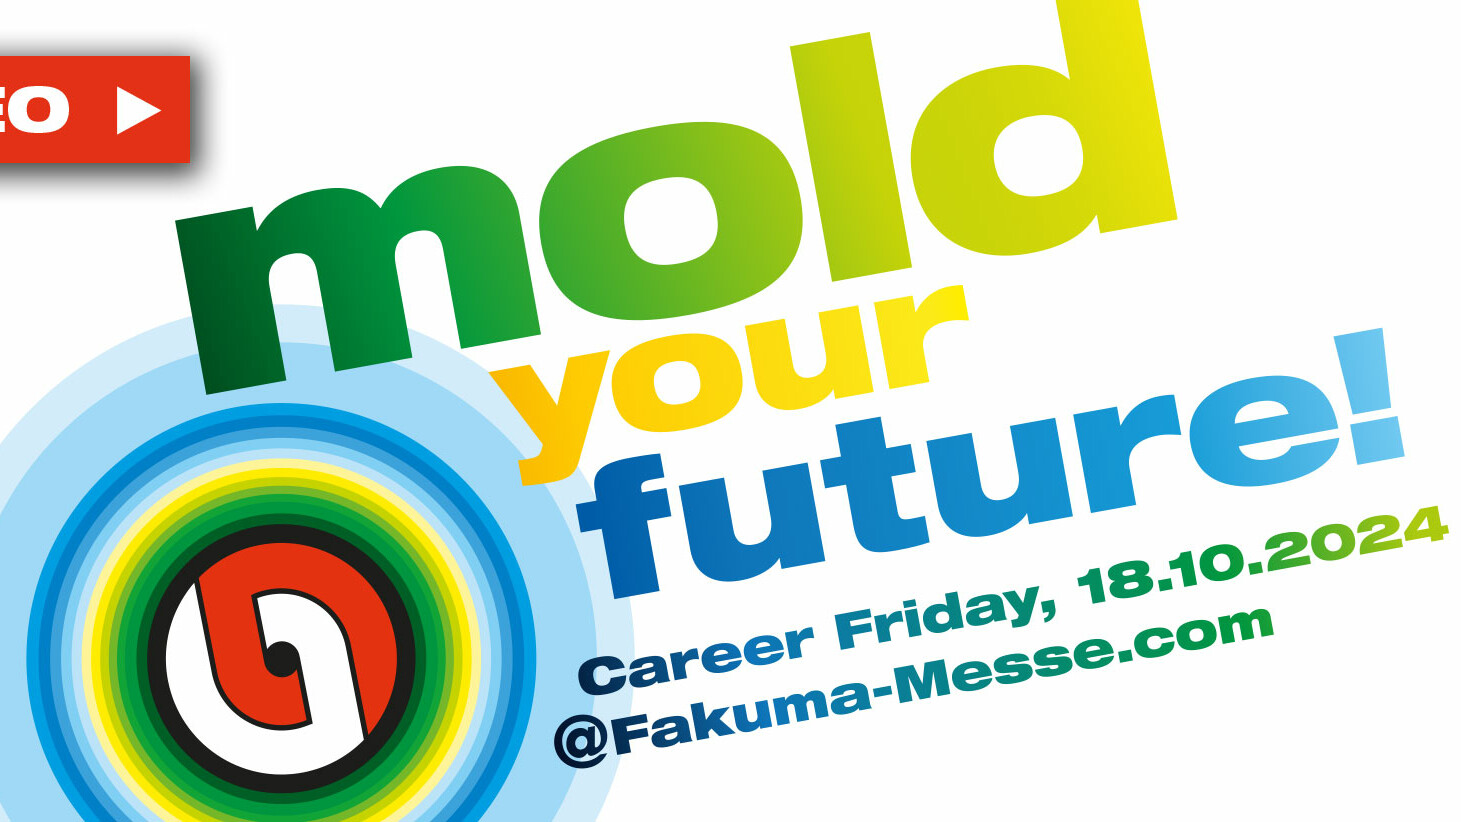 Fakuma Internationale Fachmesse für Kunststoffverarbeitung Karriere Freitag Special web en uai